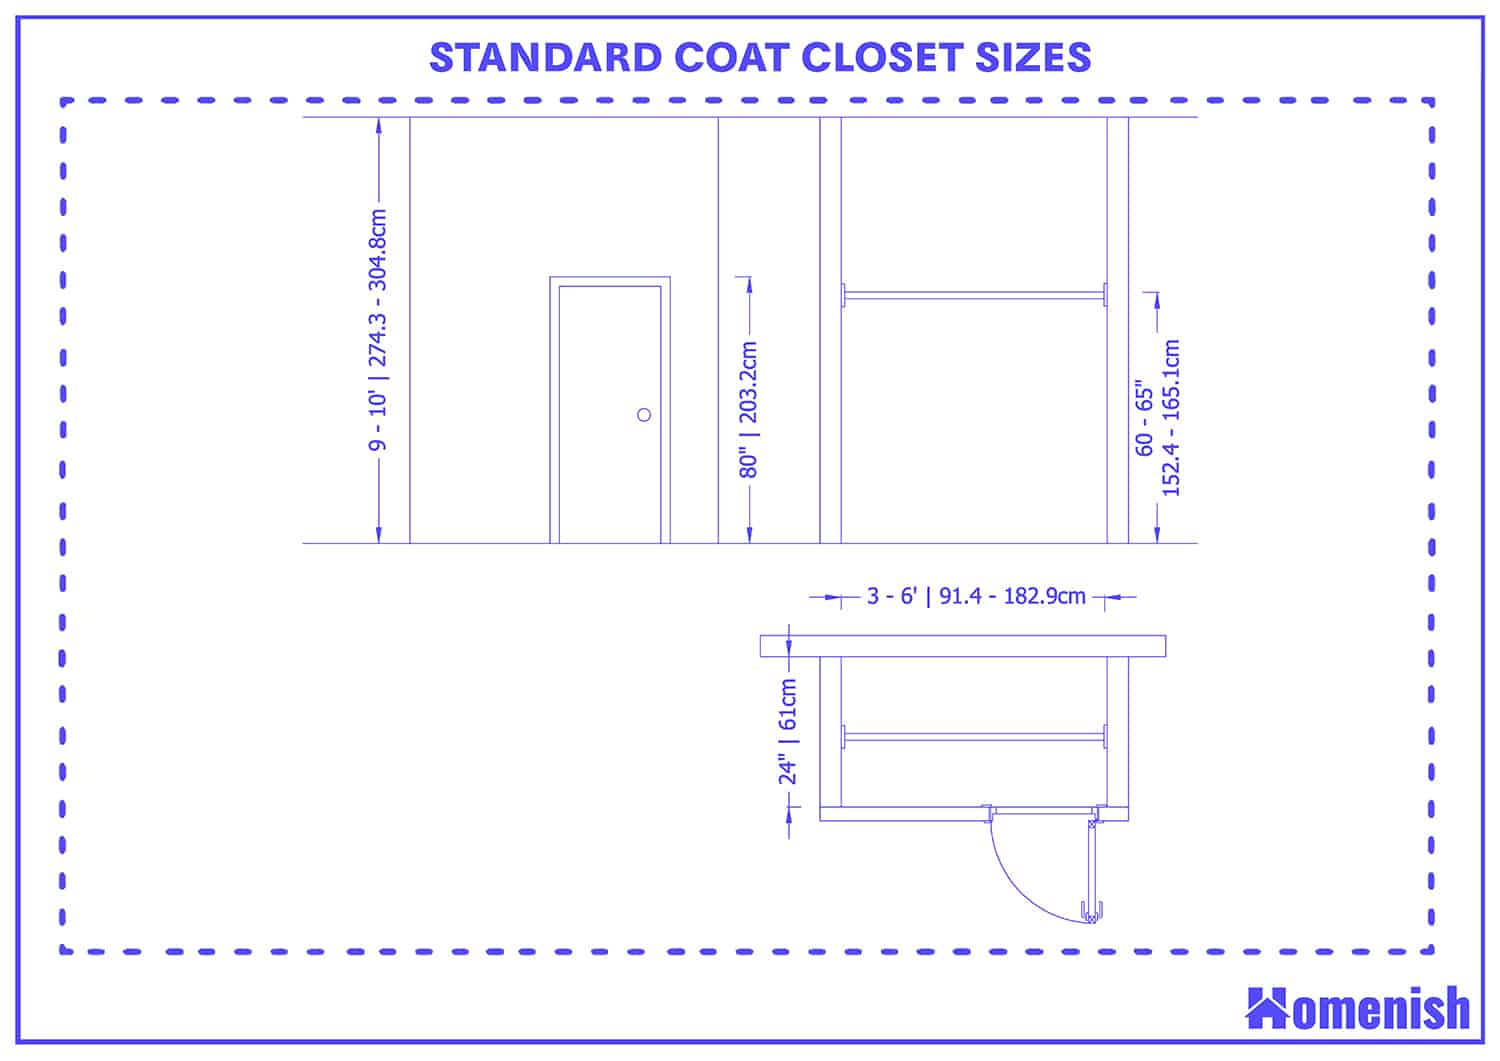 Standard coat closet sizes